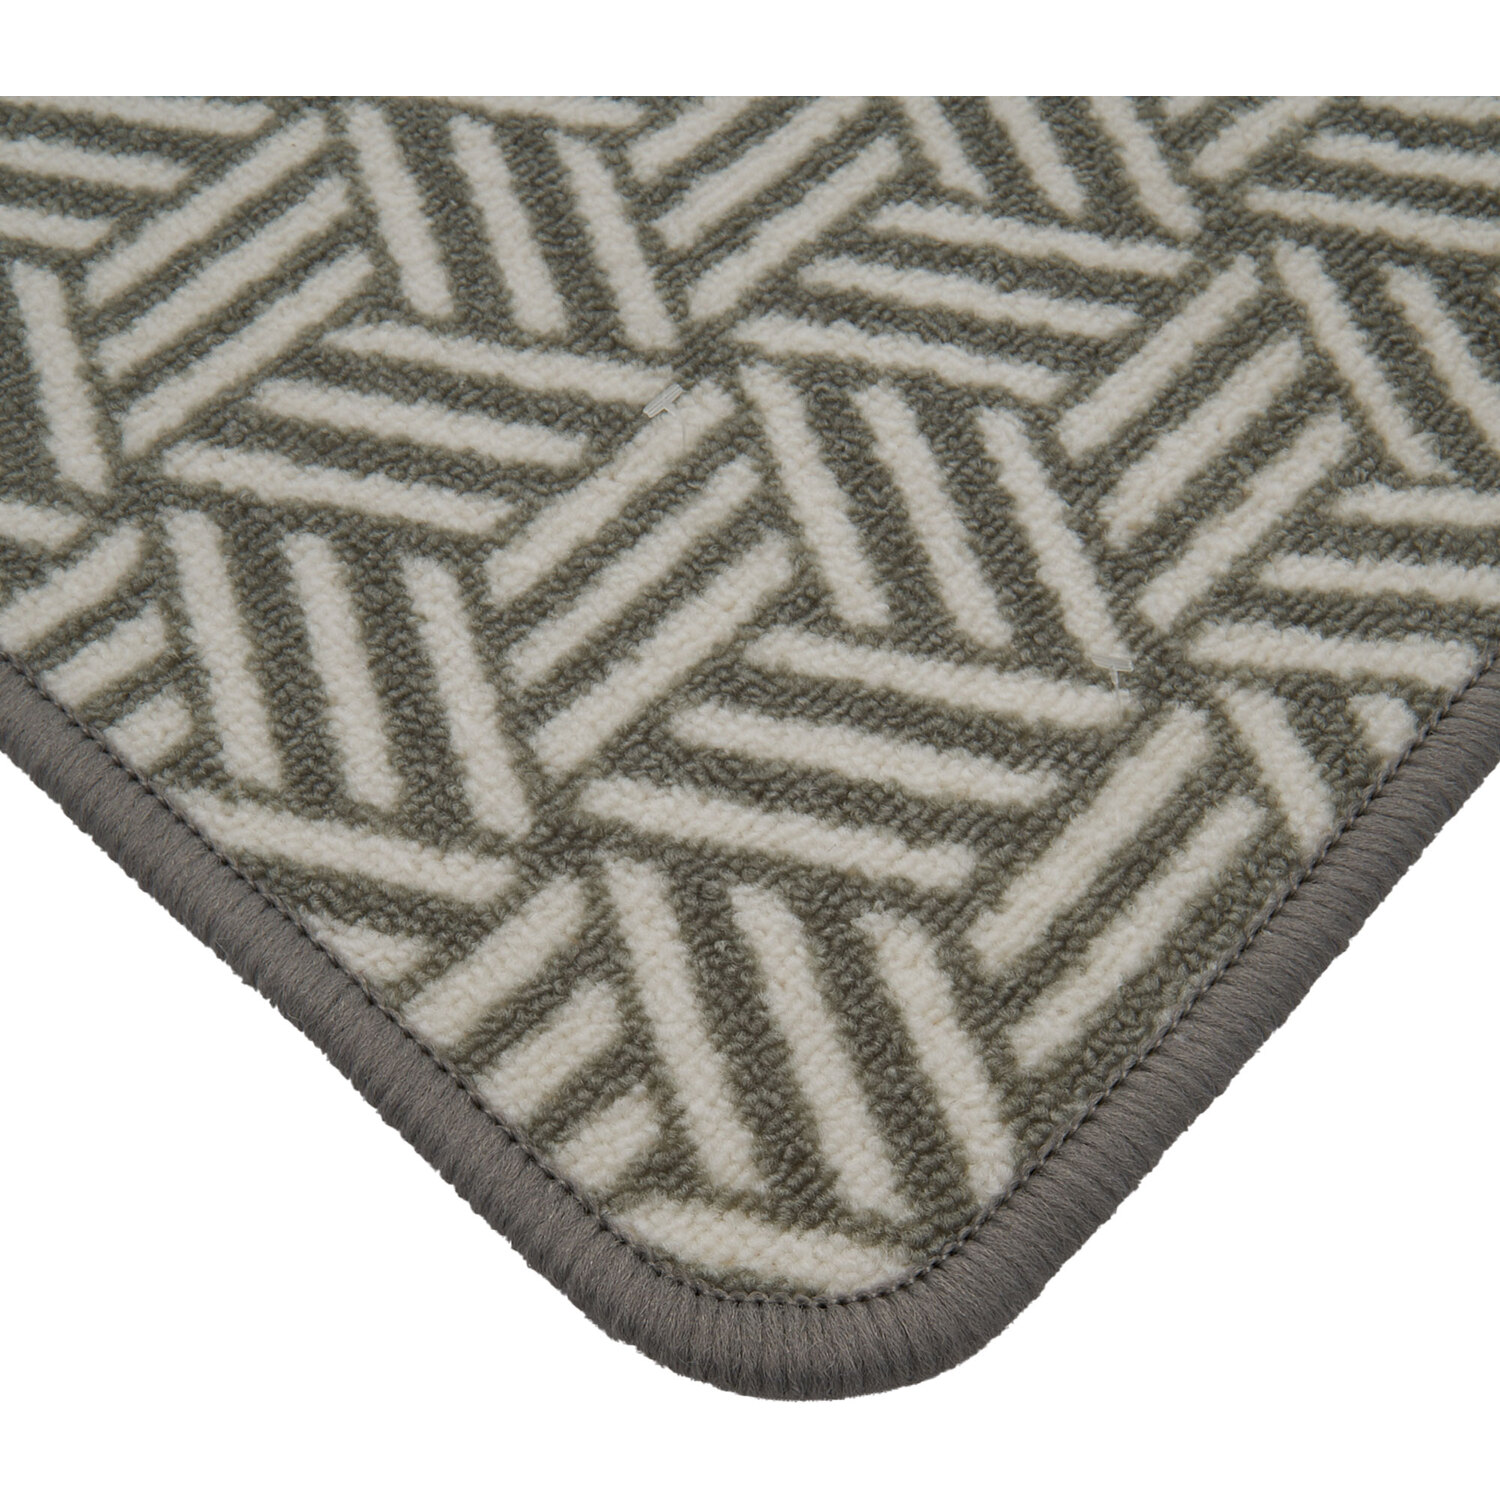 Washable Doormat - Grey Image 2